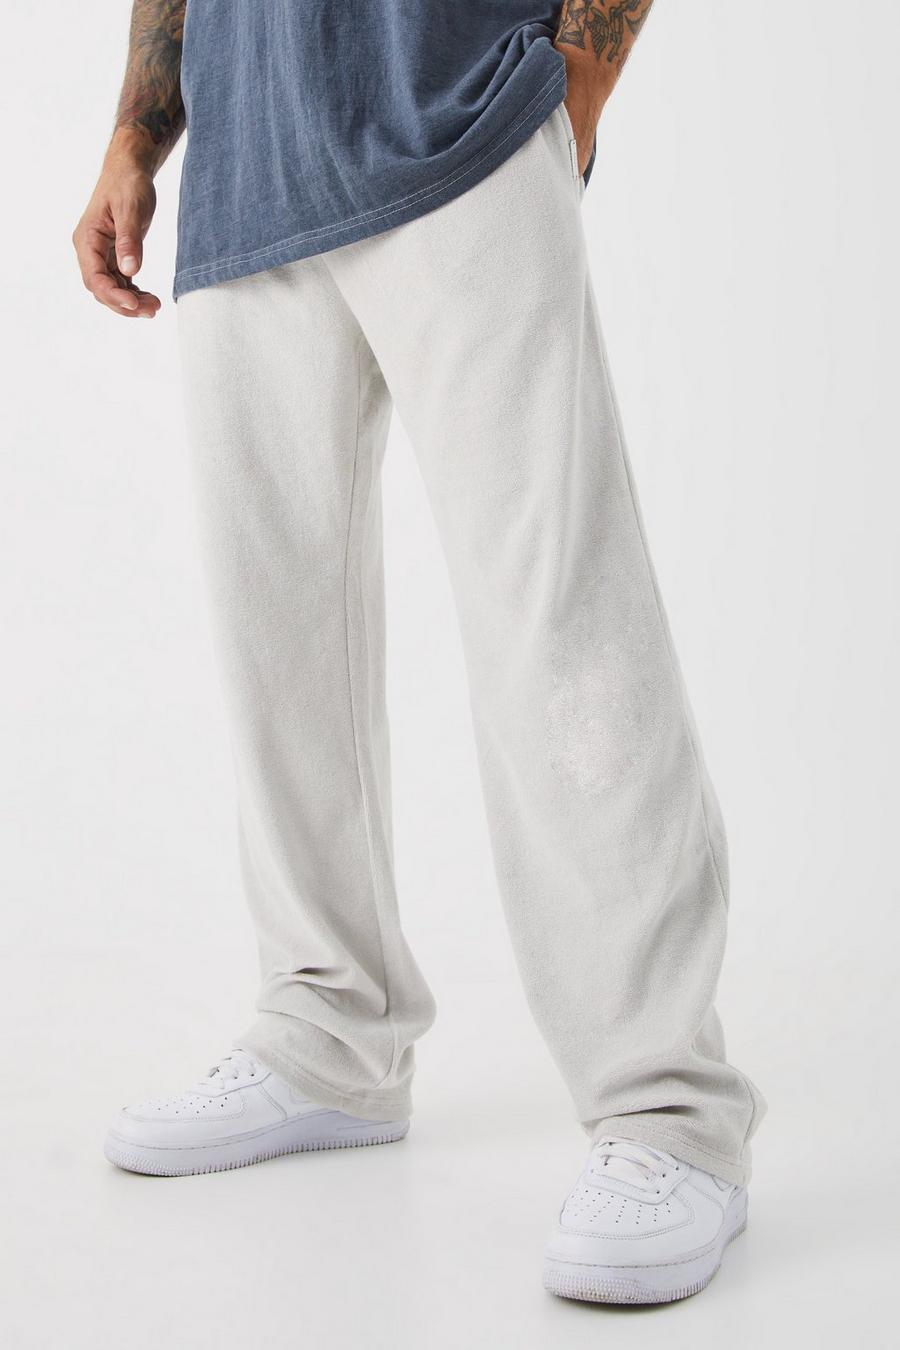 Pantalón deportivo holgado de felpa Premium, Light grey